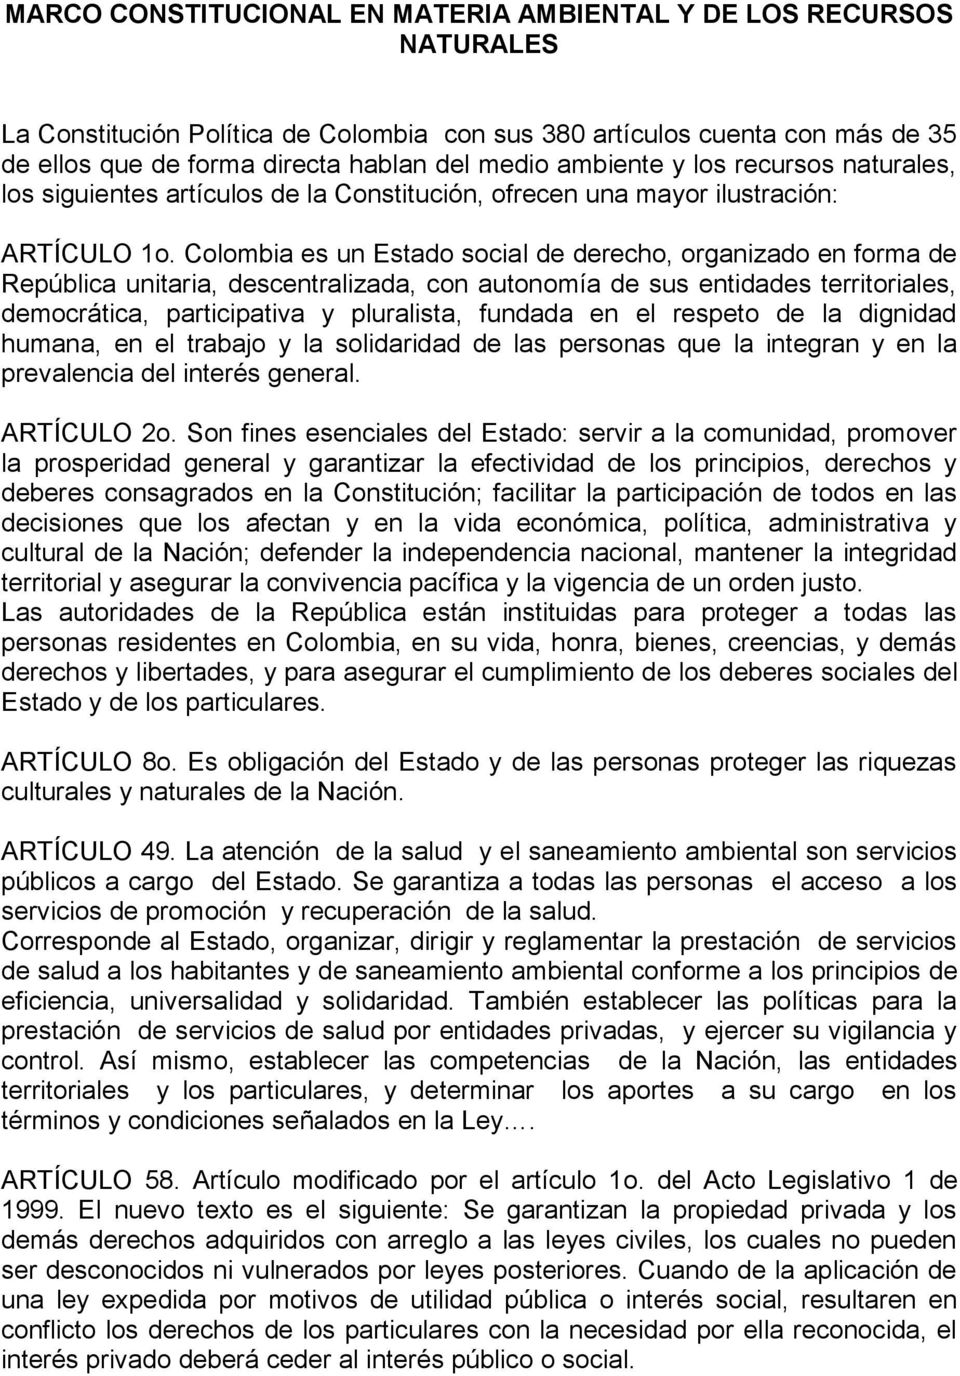 Colombia es un Estado social de derecho, organizado en forma de República unitaria, descentralizada, con autonomía de sus entidades territoriales, democrática, participativa y pluralista, fundada en